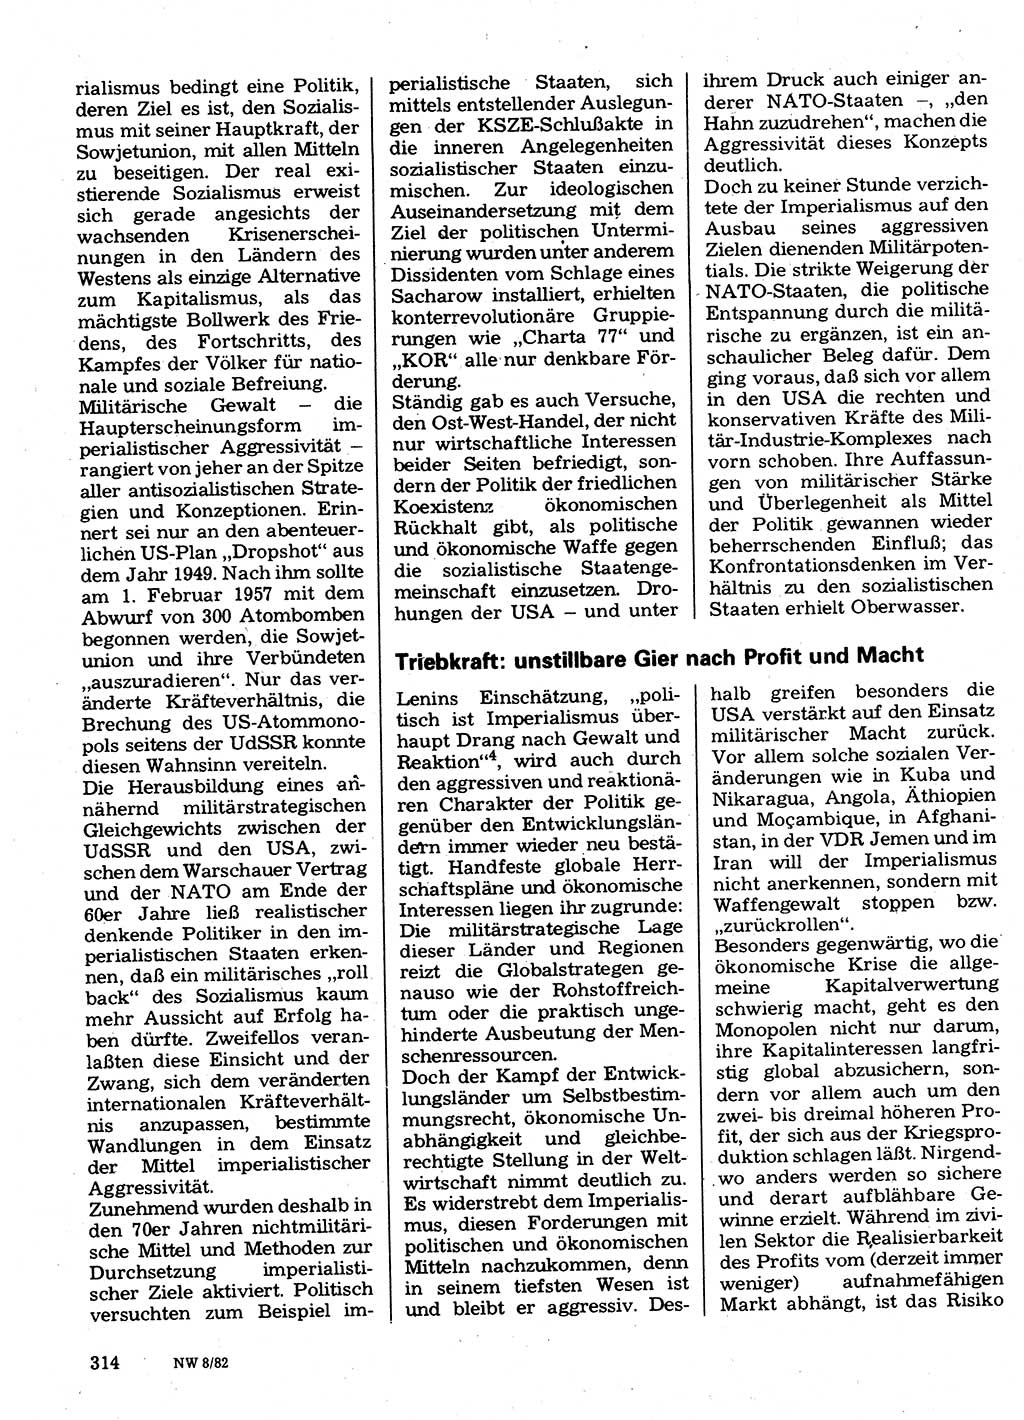 Neuer Weg (NW), Organ des Zentralkomitees (ZK) der SED (Sozialistische Einheitspartei Deutschlands) für Fragen des Parteilebens, 37. Jahrgang [Deutsche Demokratische Republik (DDR)] 1982, Seite 314 (NW ZK SED DDR 1982, S. 314)